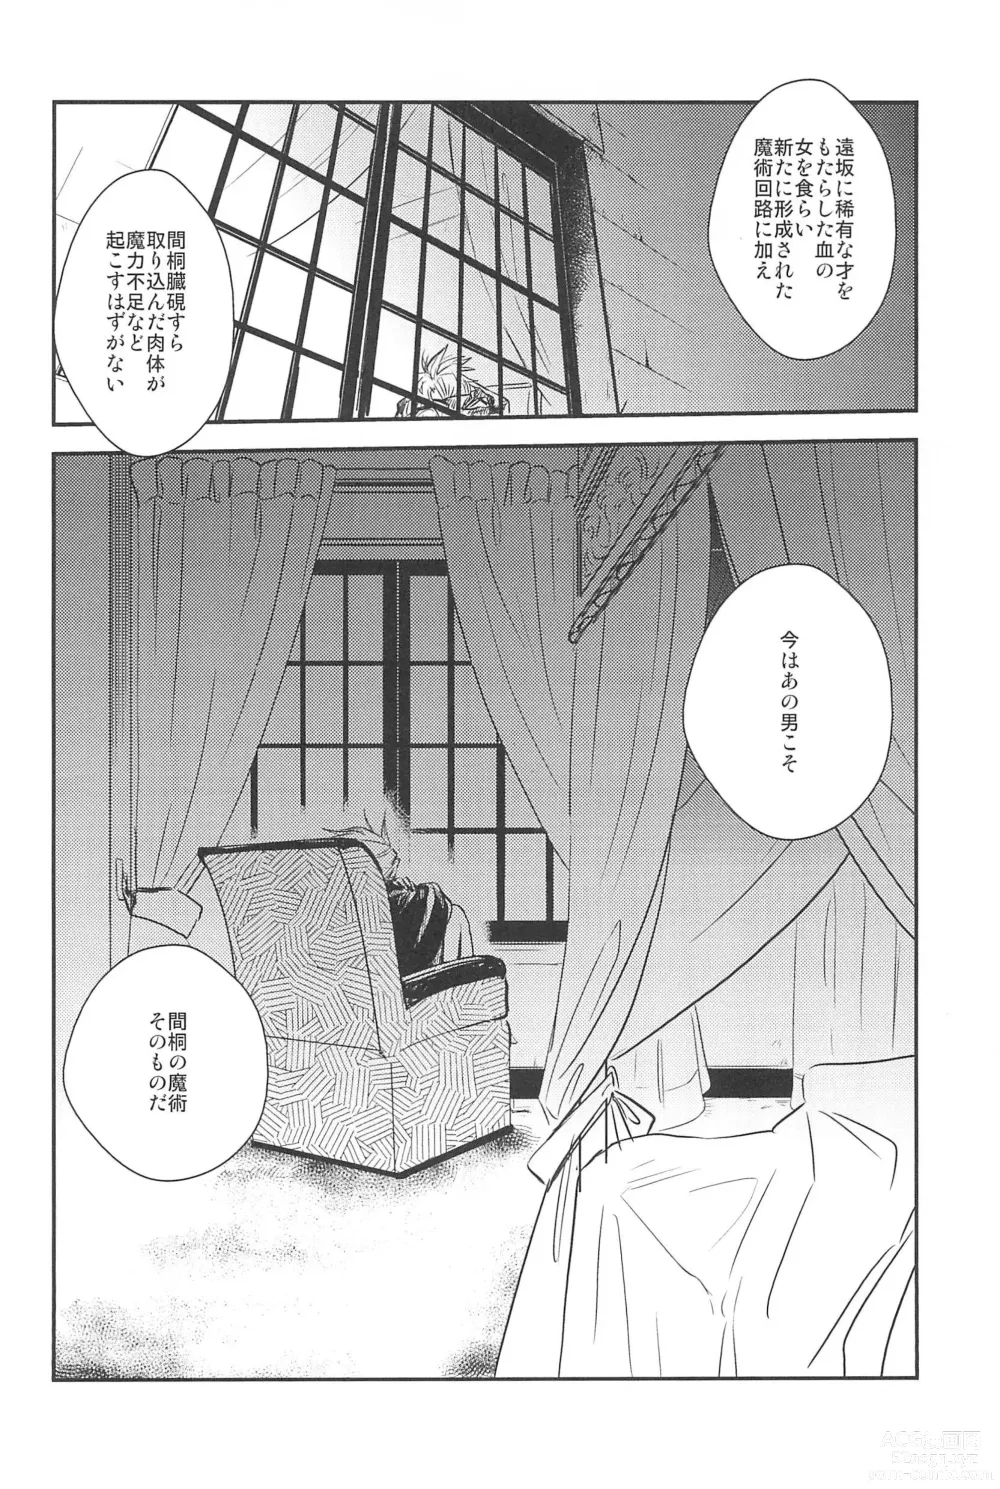 Page 18 of doujinshi RE:BERSERK